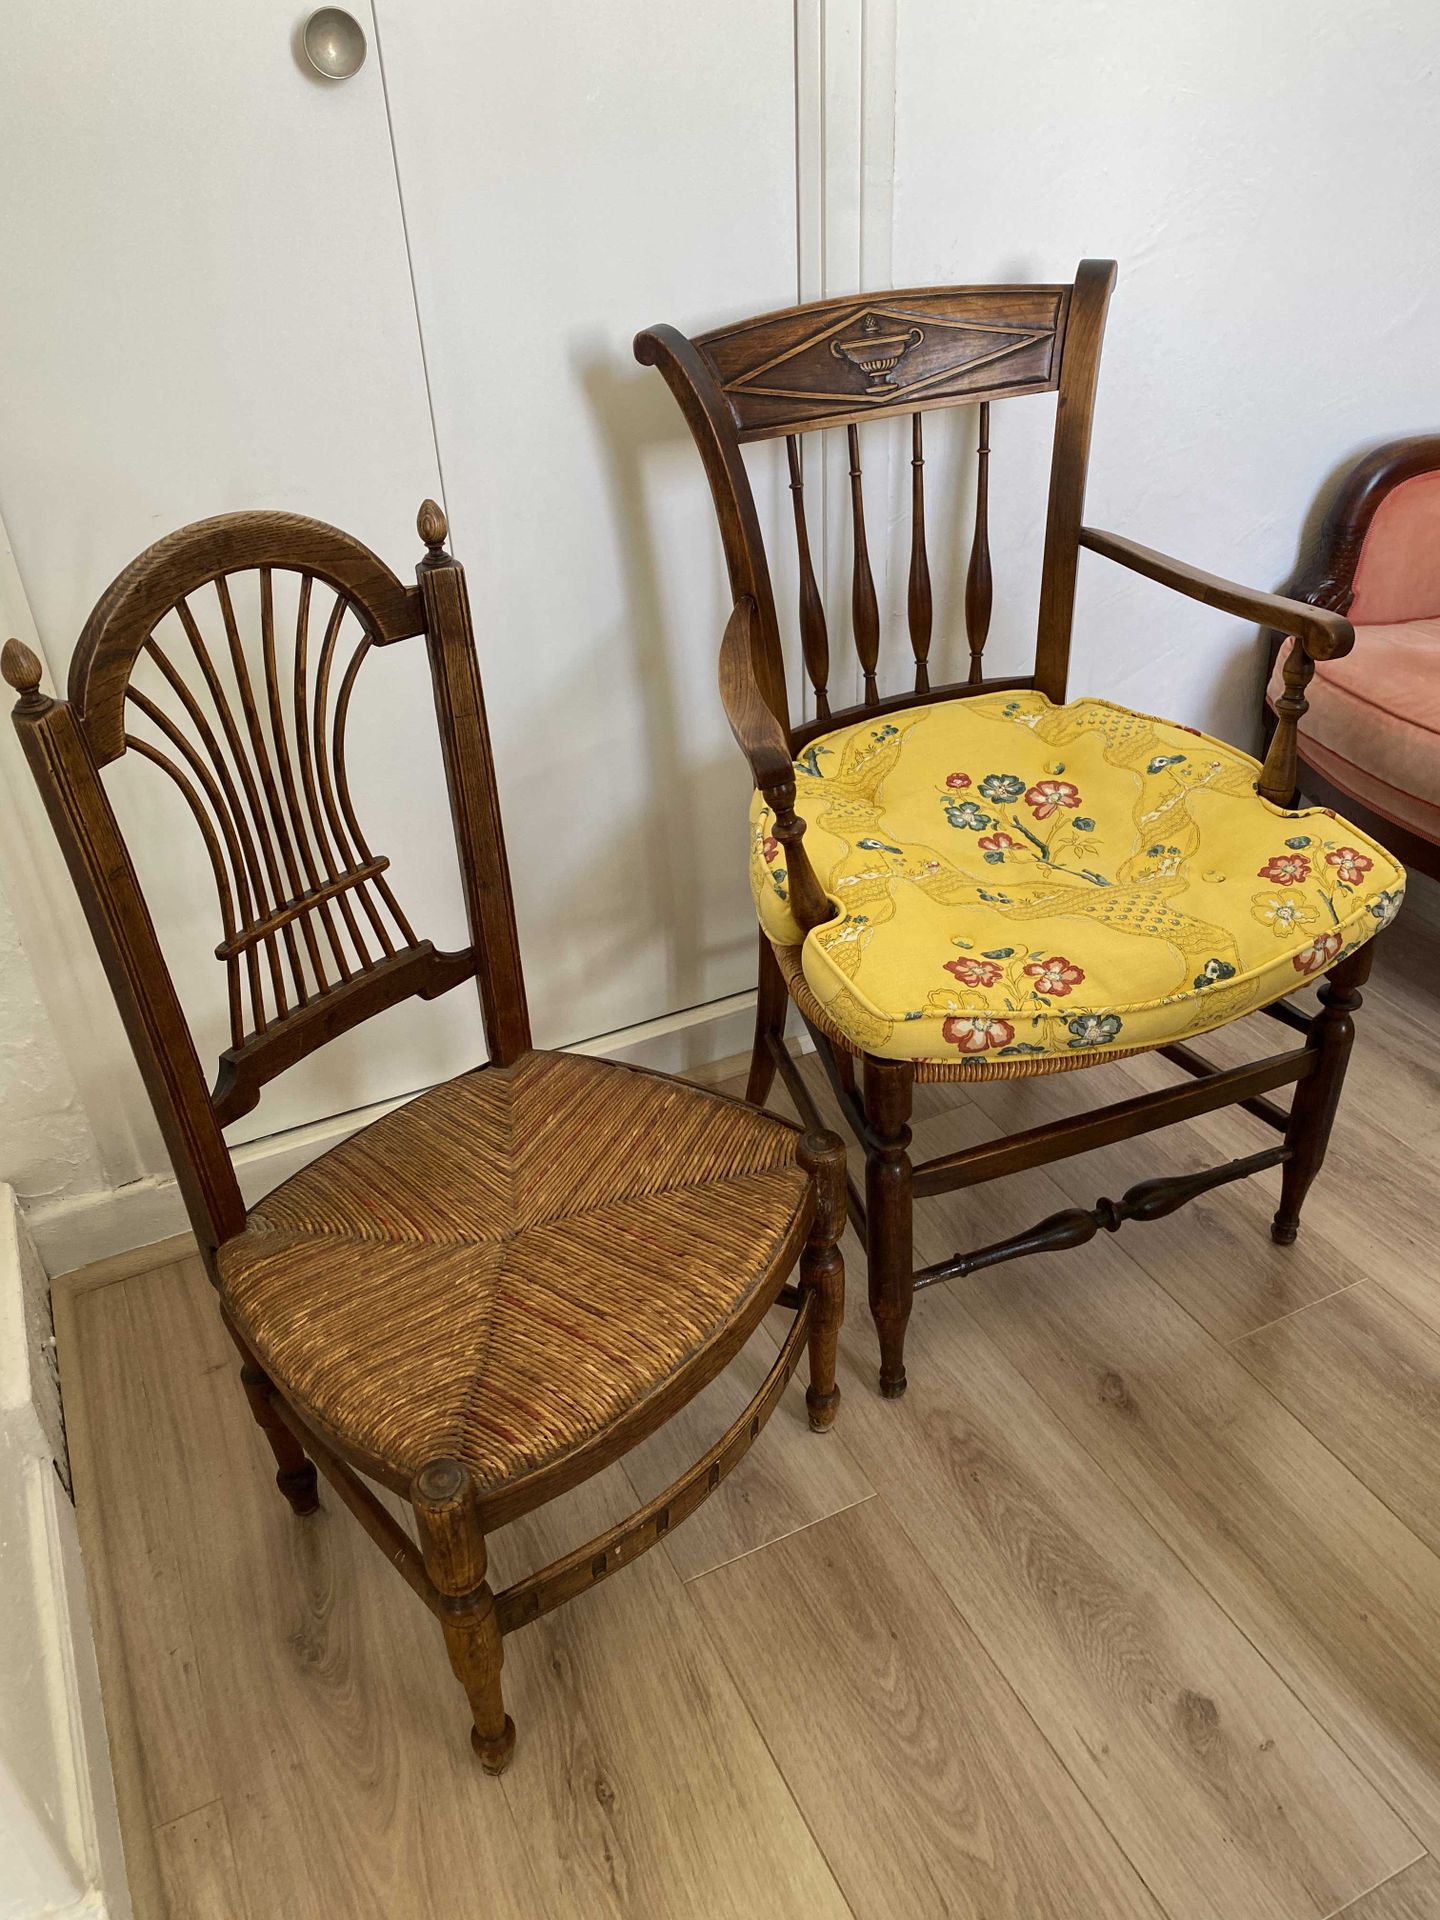 Null Lotto comprendente una sedia impagliata e una poltrona

XIX secolo